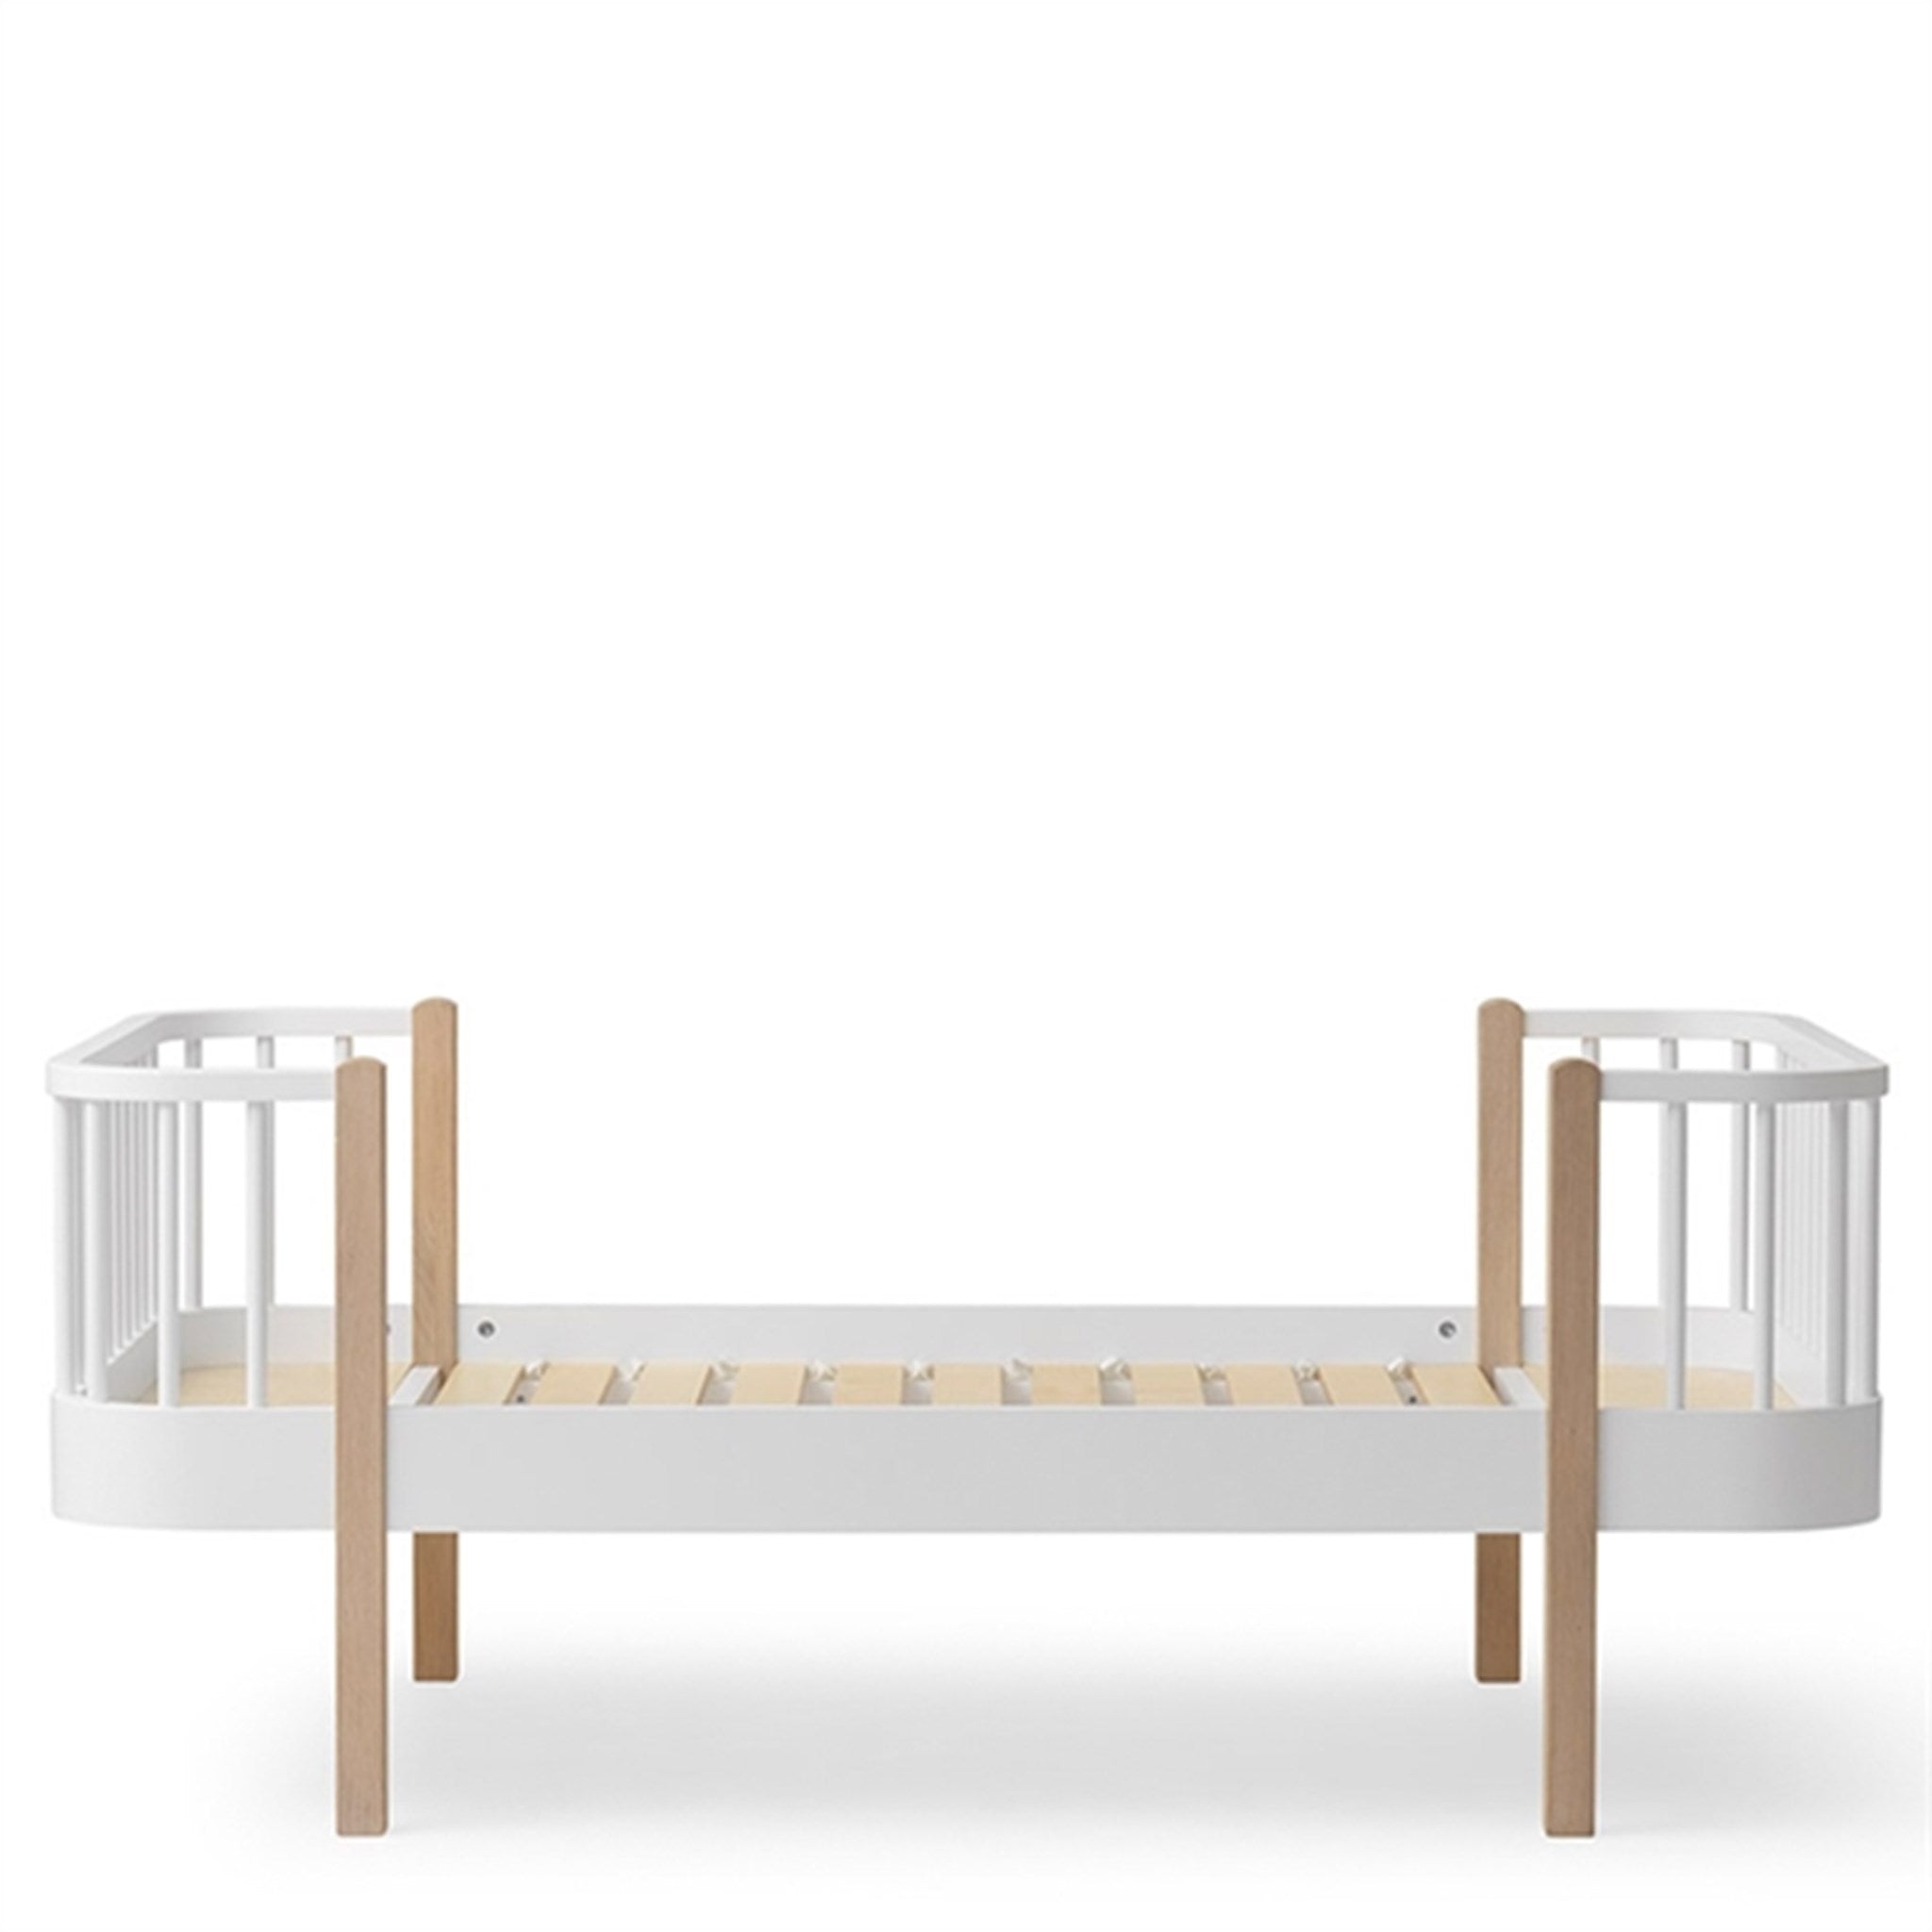 Oliver Furniture Wood Junior Bed